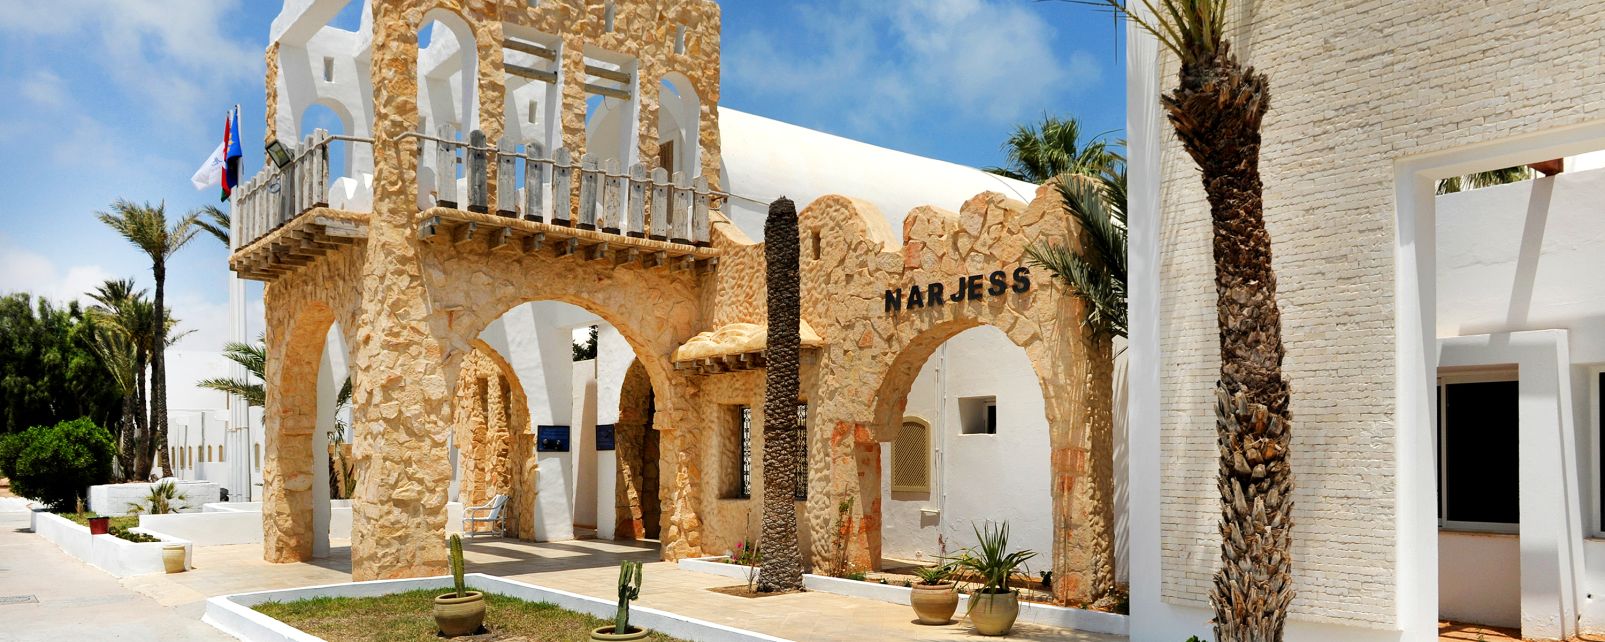 Hôtel Narjess - Dar Djerba